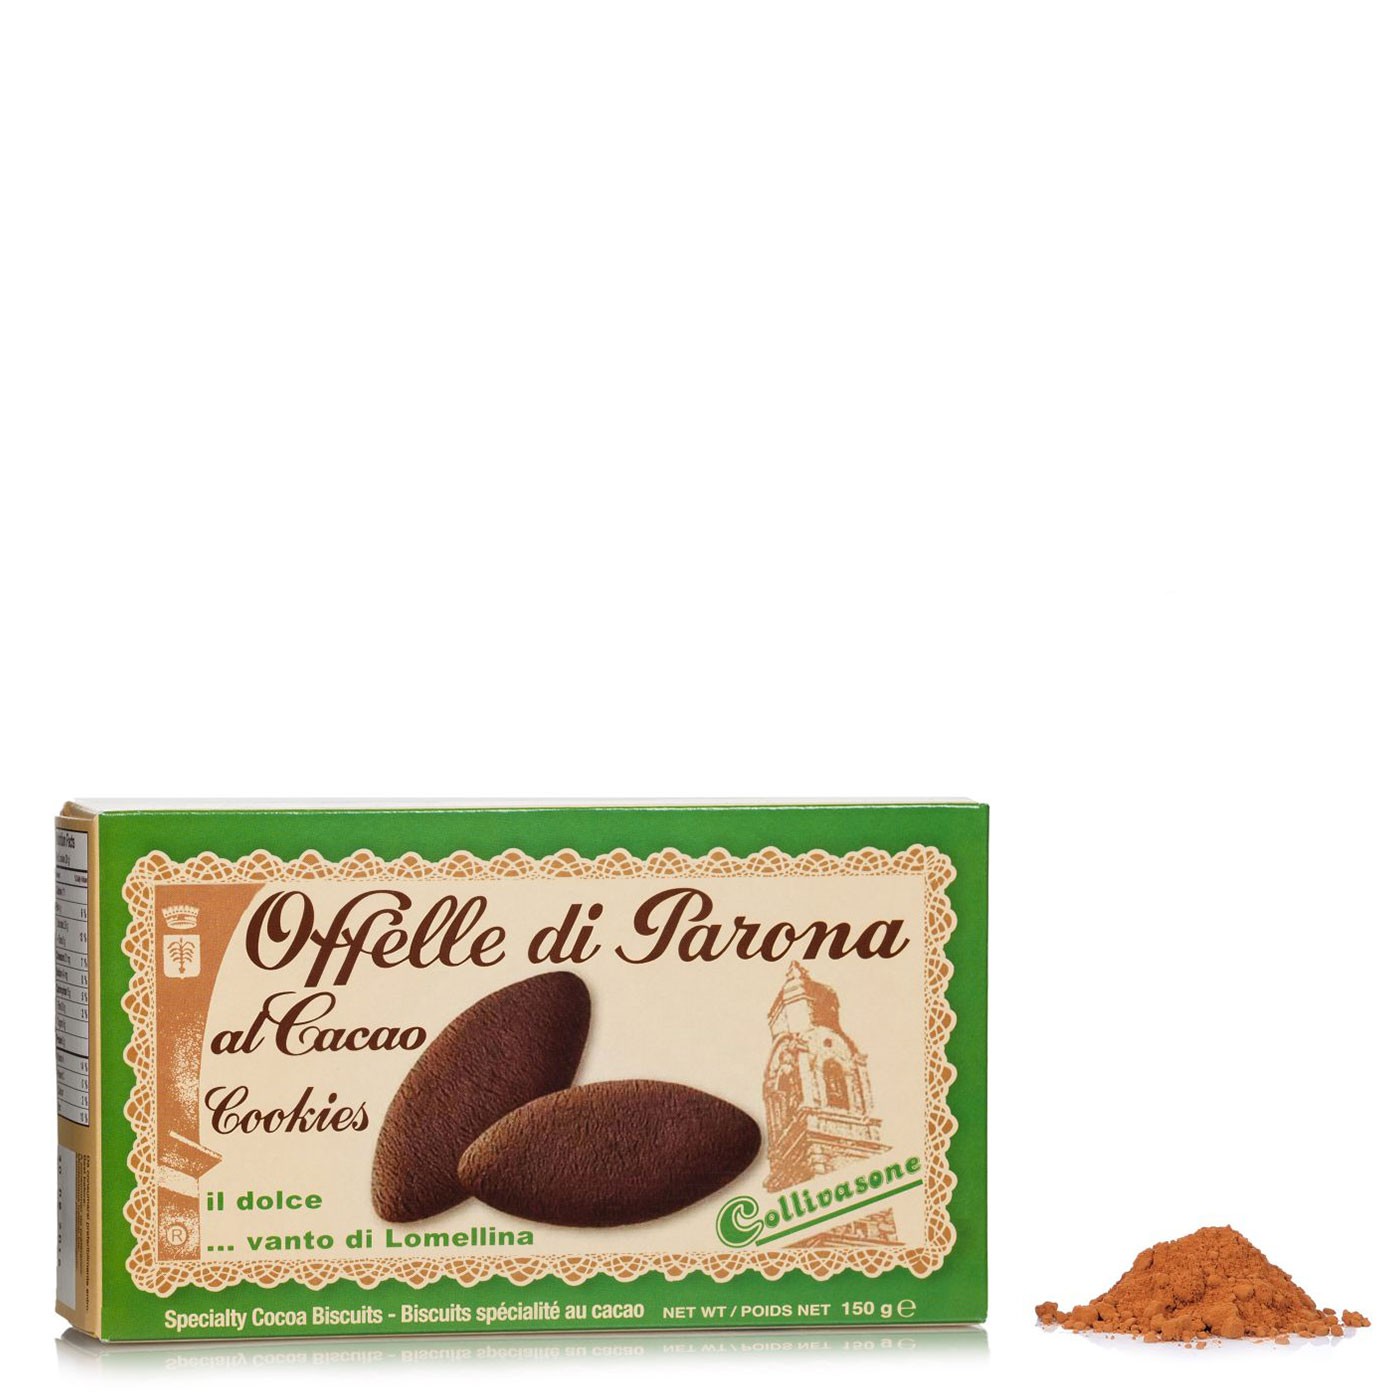 Cocoa Offelle di Parona Cookies 6.69oz